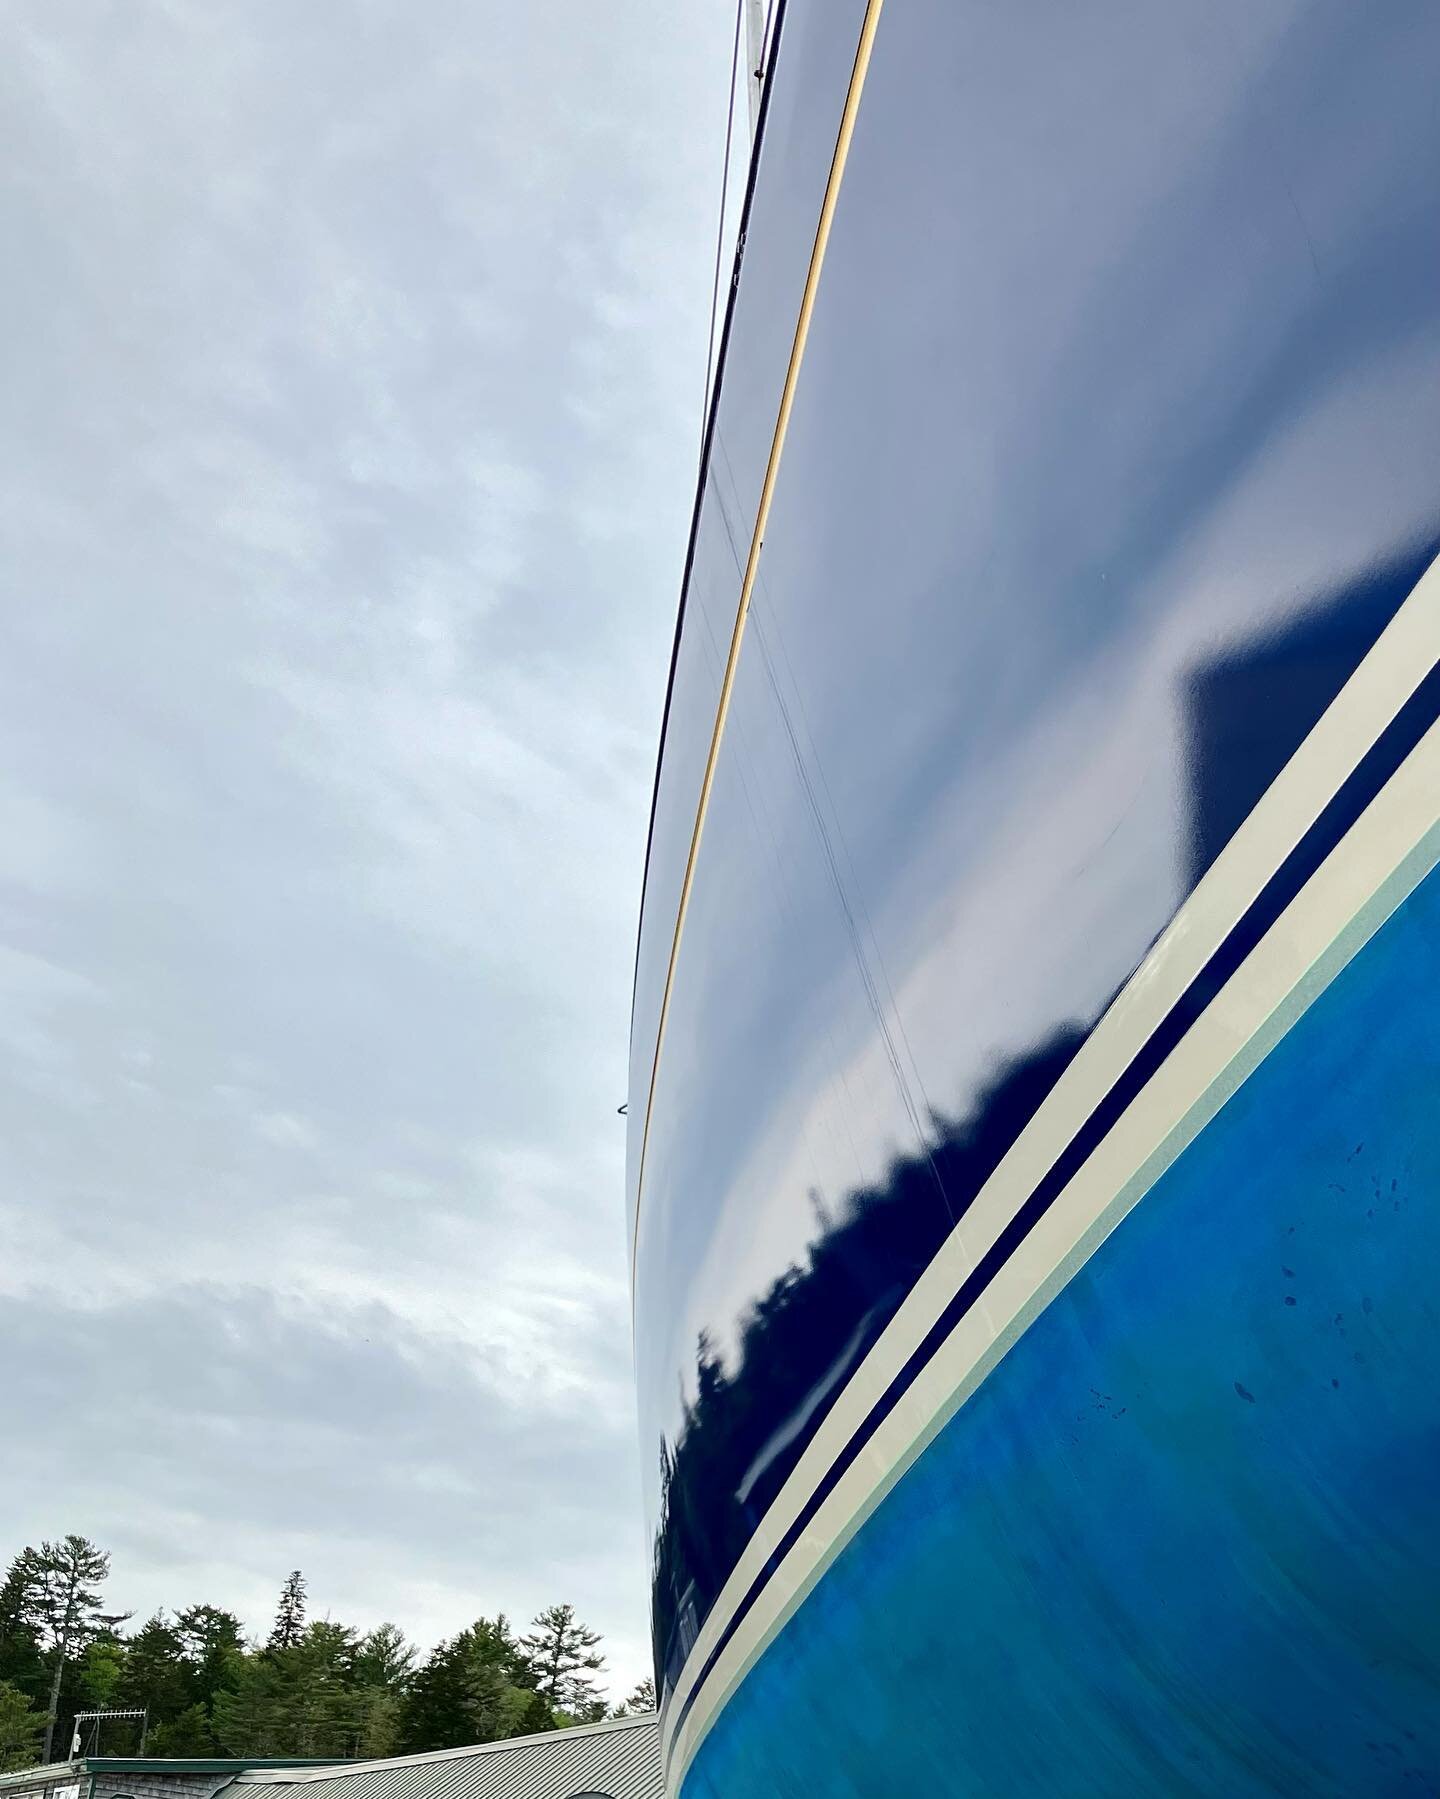 Grey skies on blue. 
Getting ready for summer.
#boatfinishing #hullpainting #maineboatyard #webberscoveboatyards #sailboats #maineboats #fullserviceboatyard #boatlaunching